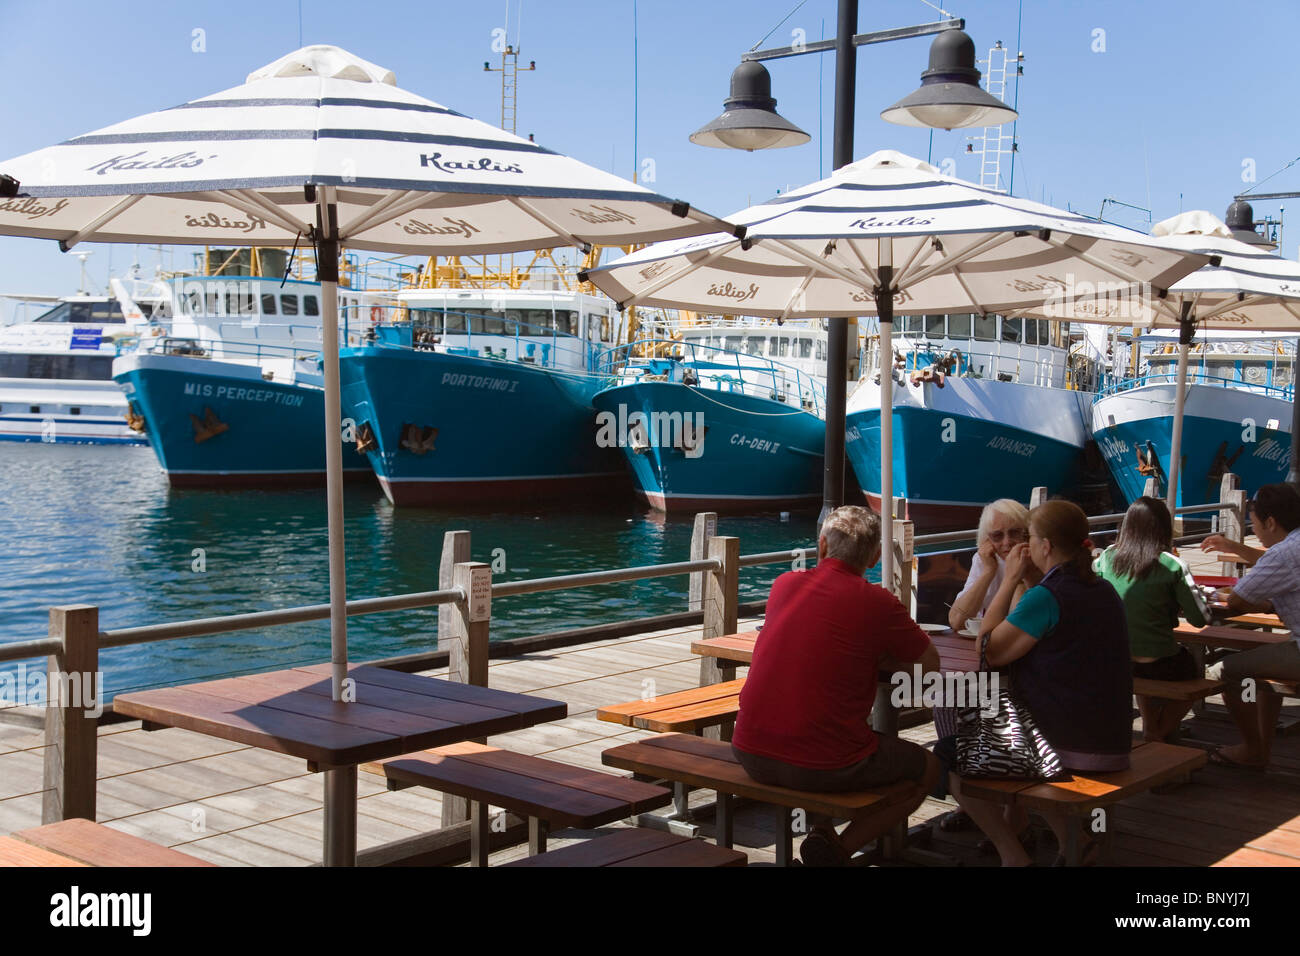 Bateau de pêche Harbour - un endroit populaire pour le poisson et frites à la ville portuaire de Fremantle, Australie occidentale, Australie. Banque D'Images